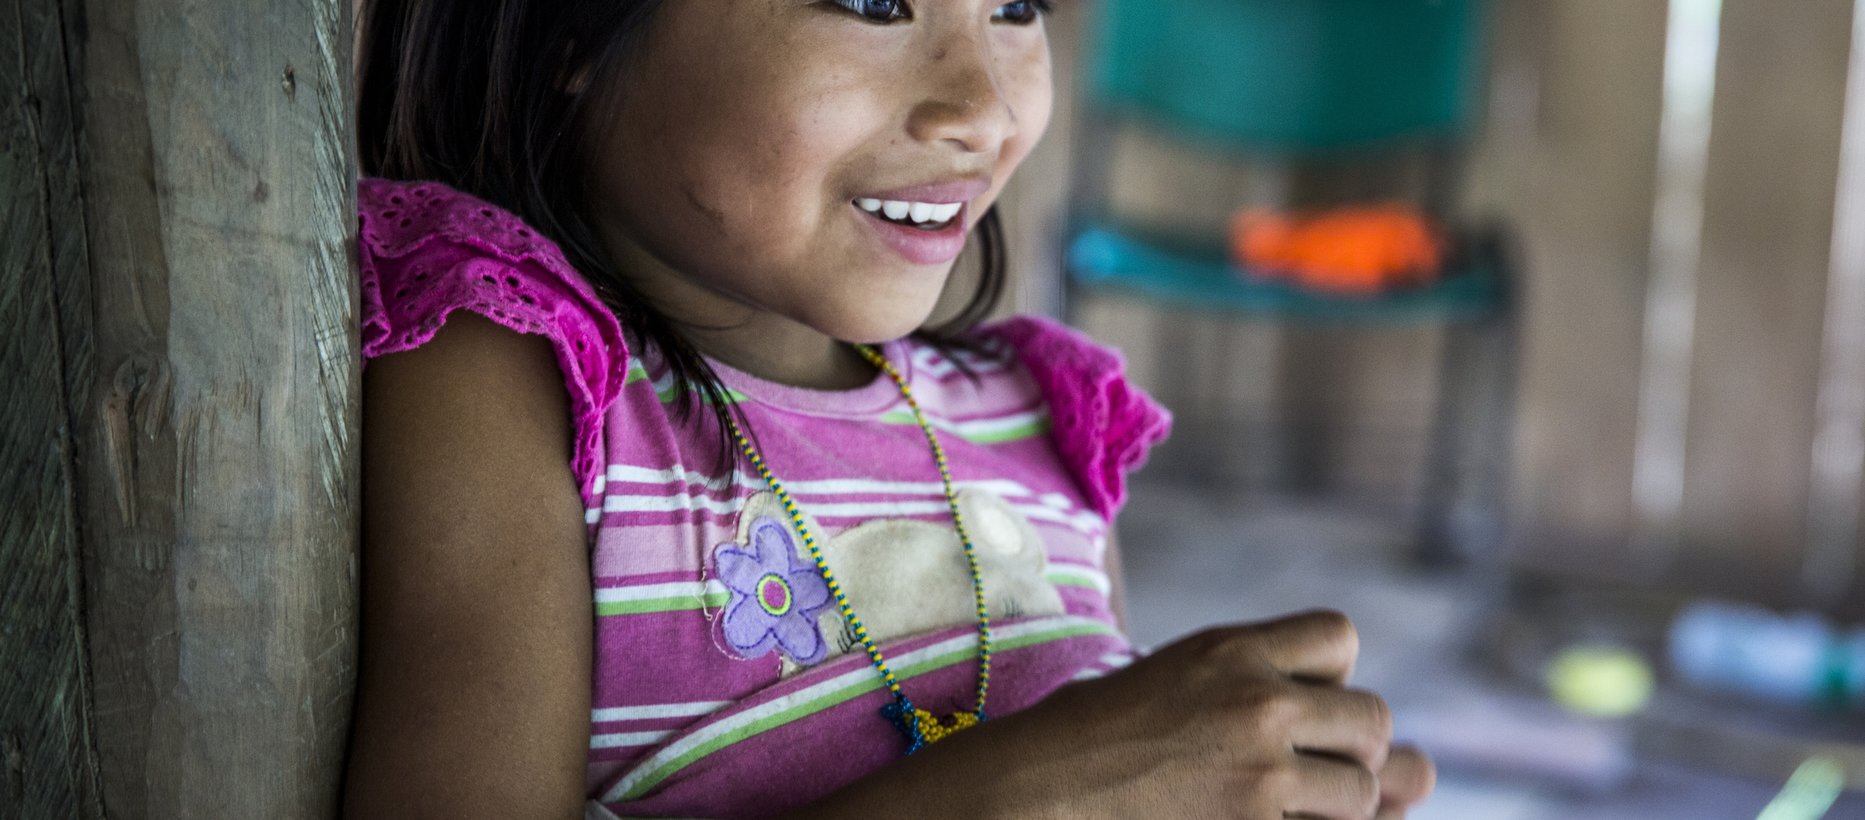 Lapsi Kolumbiassa kuva: Meeri Koutaniemi